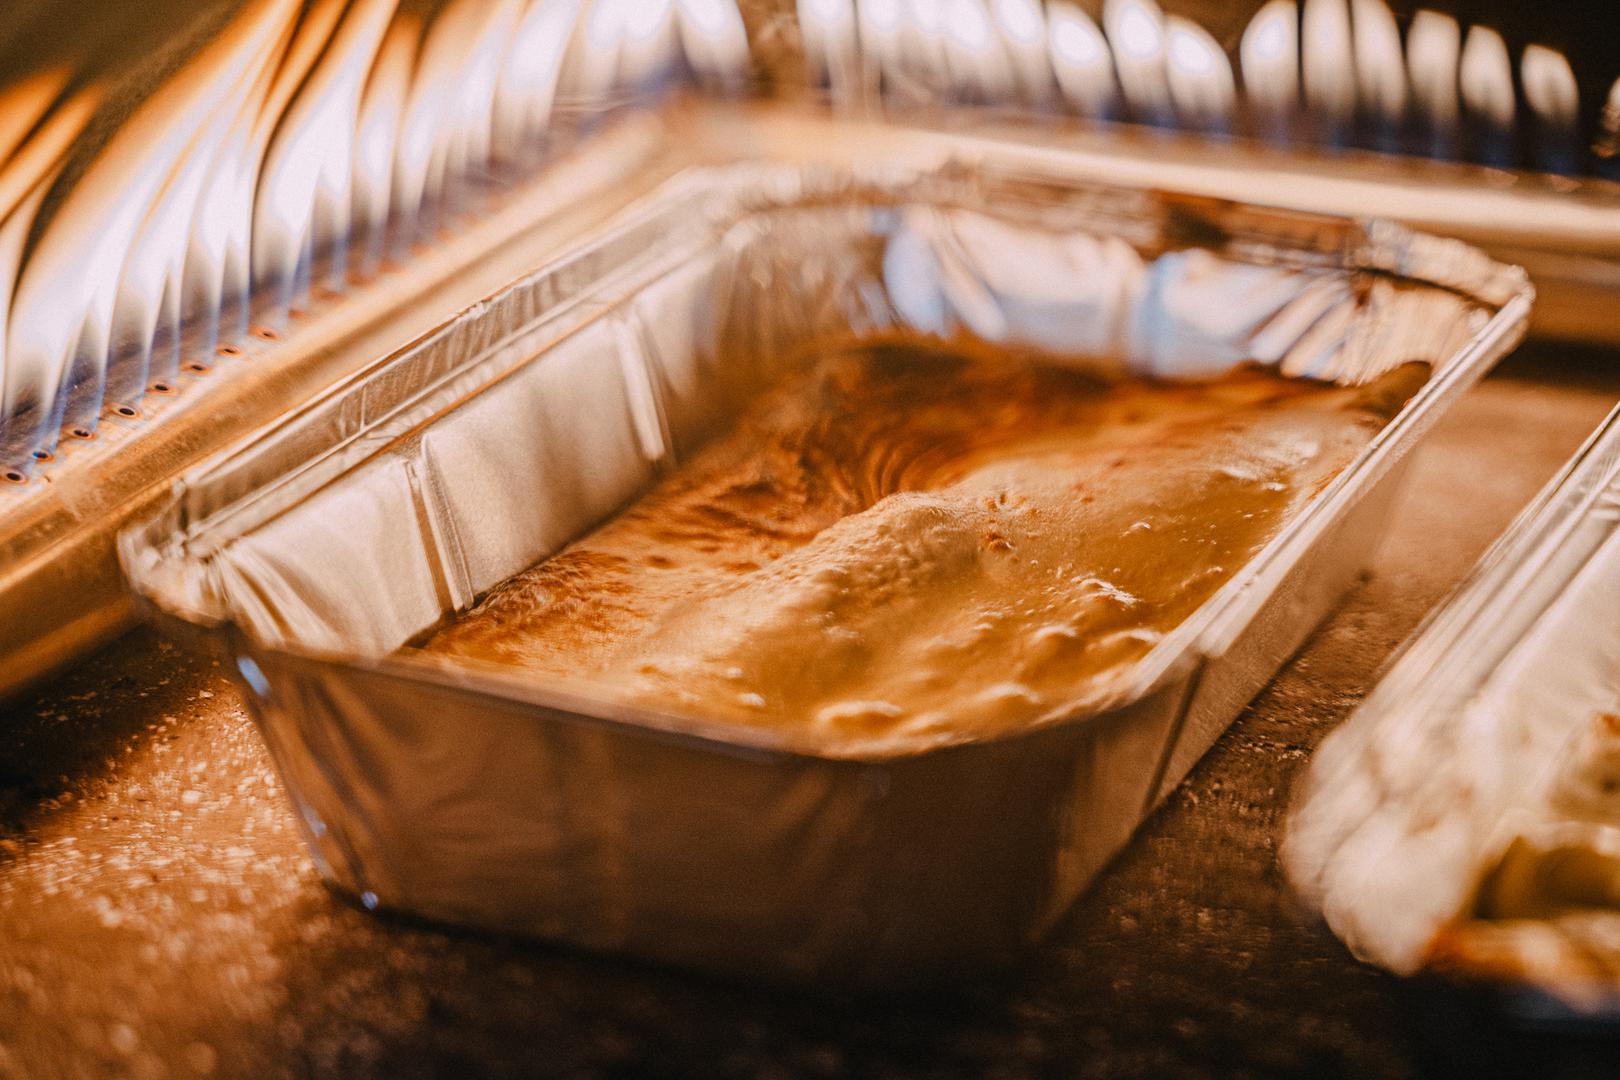 Kornatski restoran Opat pripremio je palačinke s orasima i nutellom zapeče u krušnoj peći